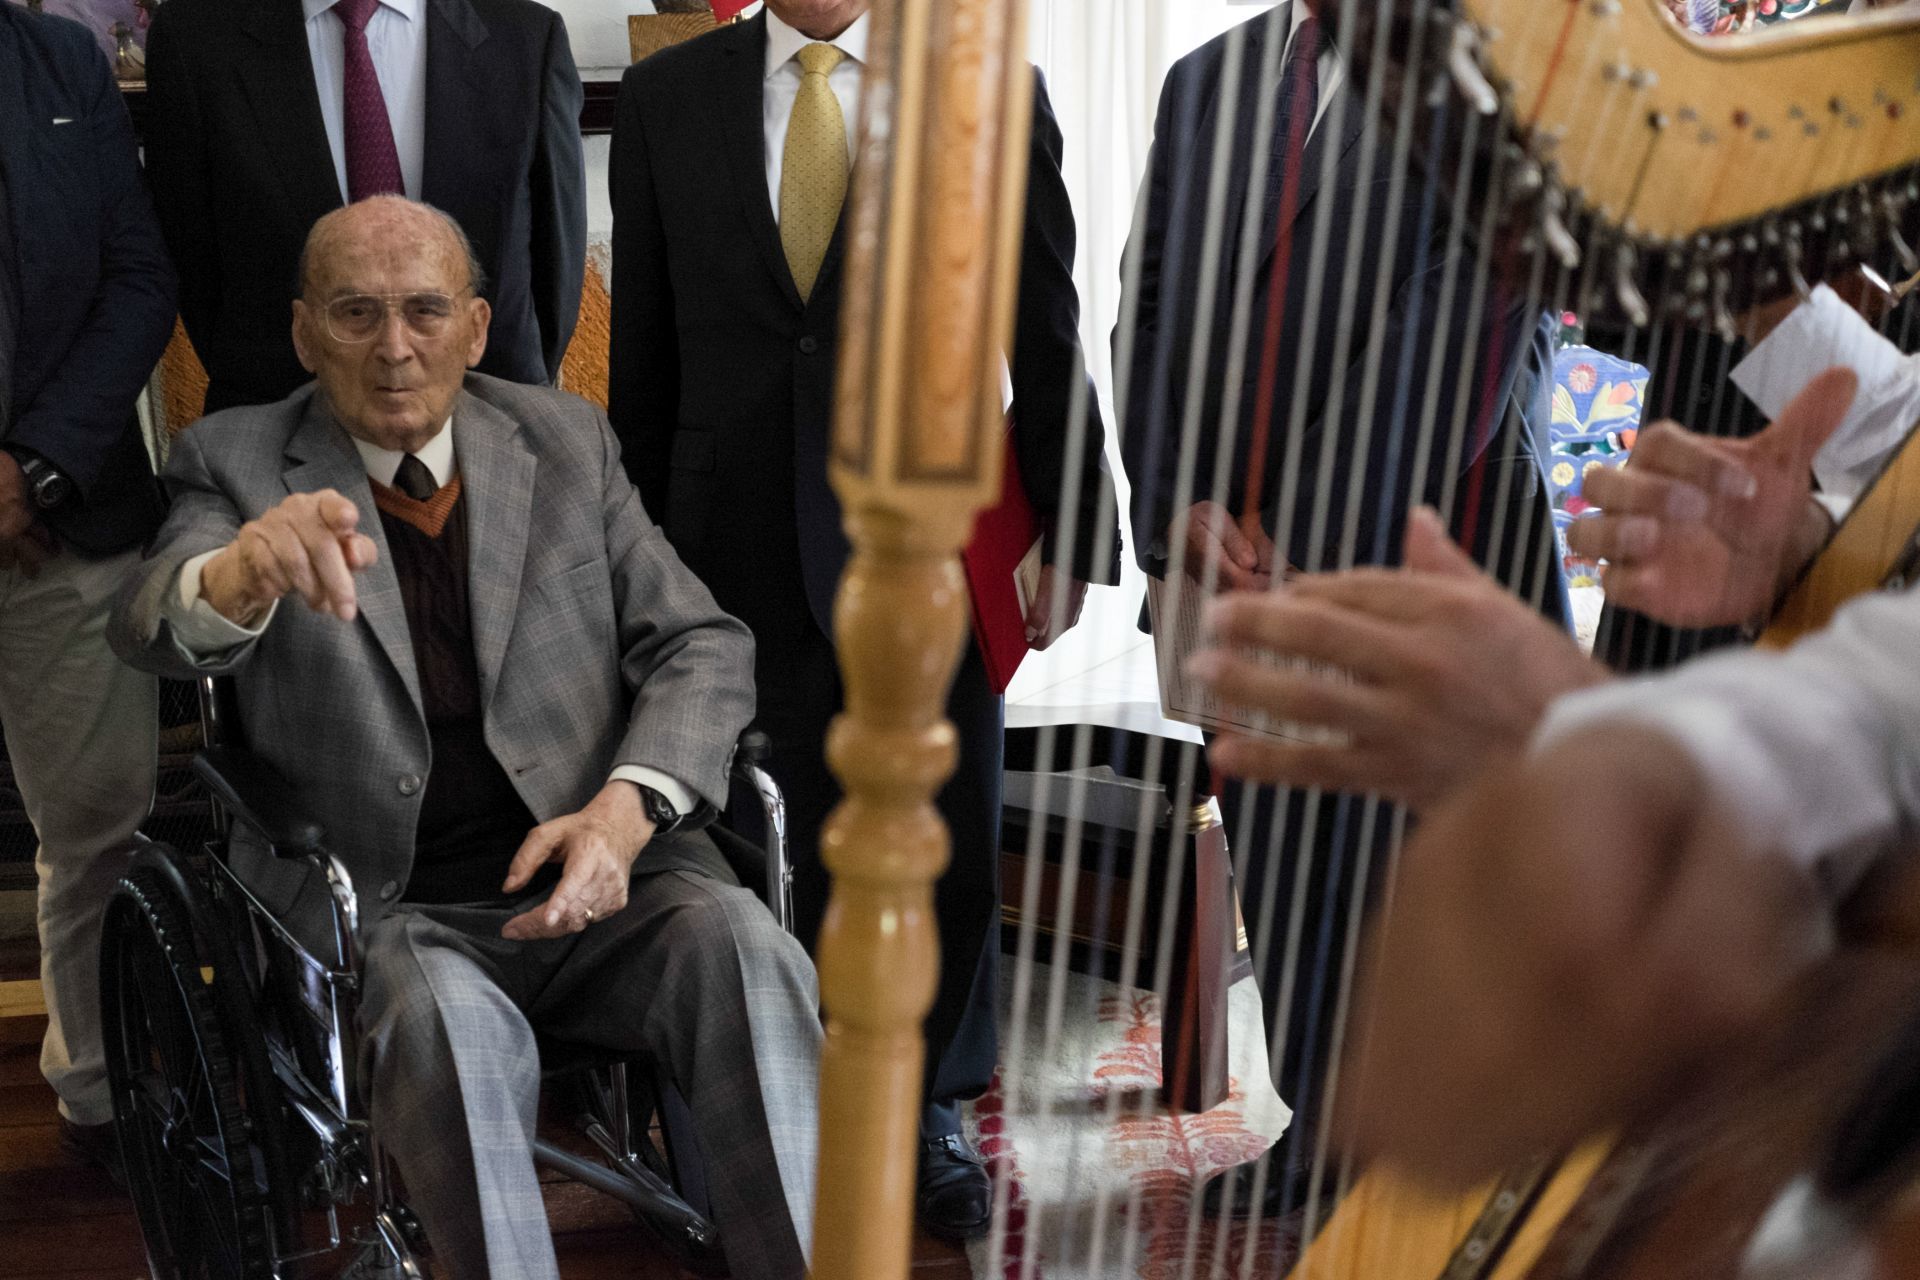  El ex presidente Luis Echeverría.
FOTO: PEDRO VALTIERRA /ARCHIVO/CUARTOSCURO.COM